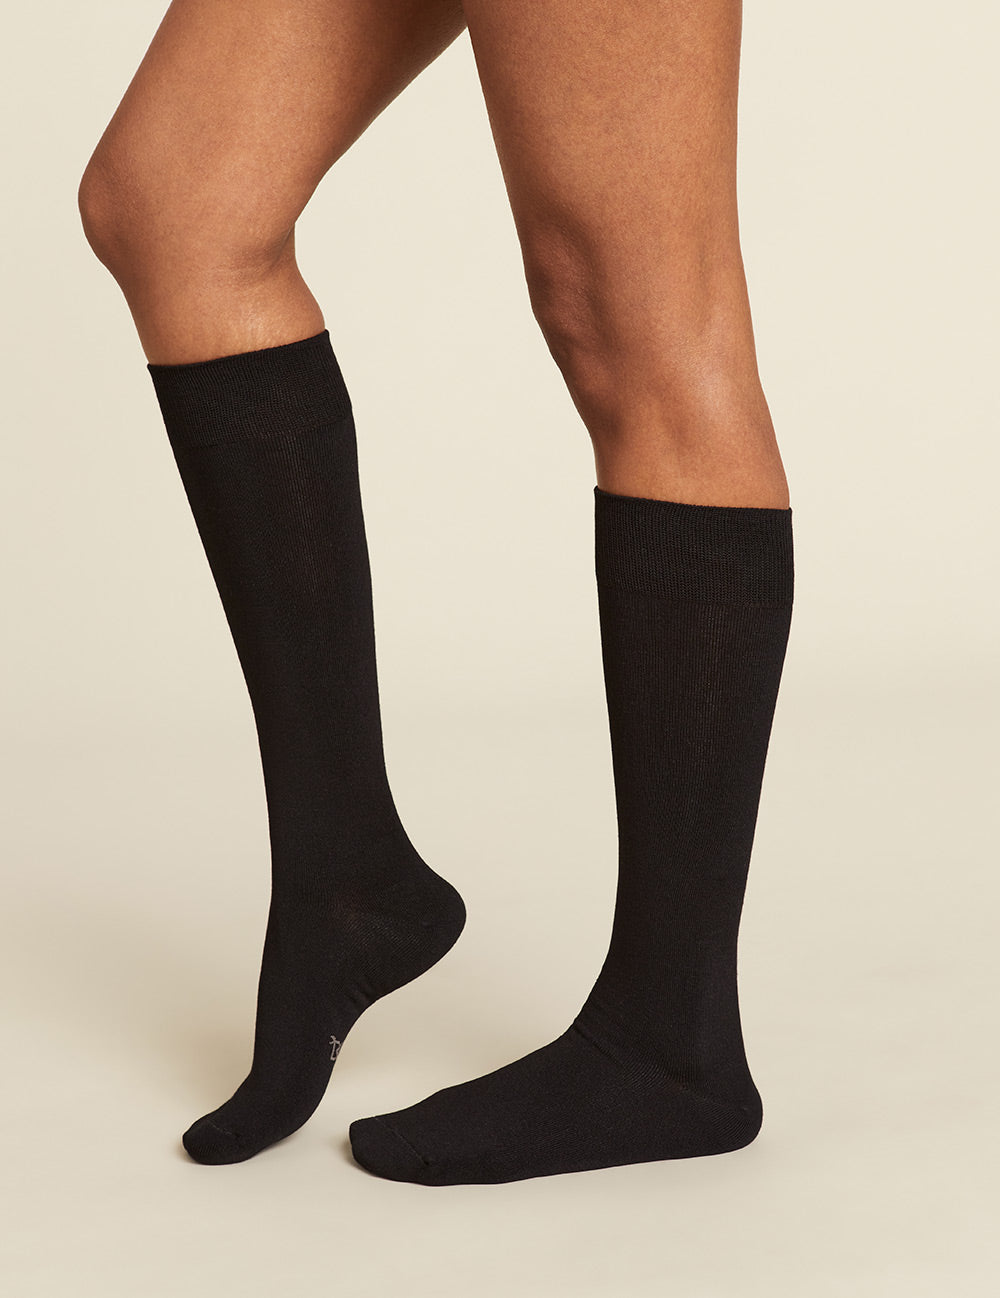 Women_s-Everyday-Knee-High-Socks-Black-Side.jpg